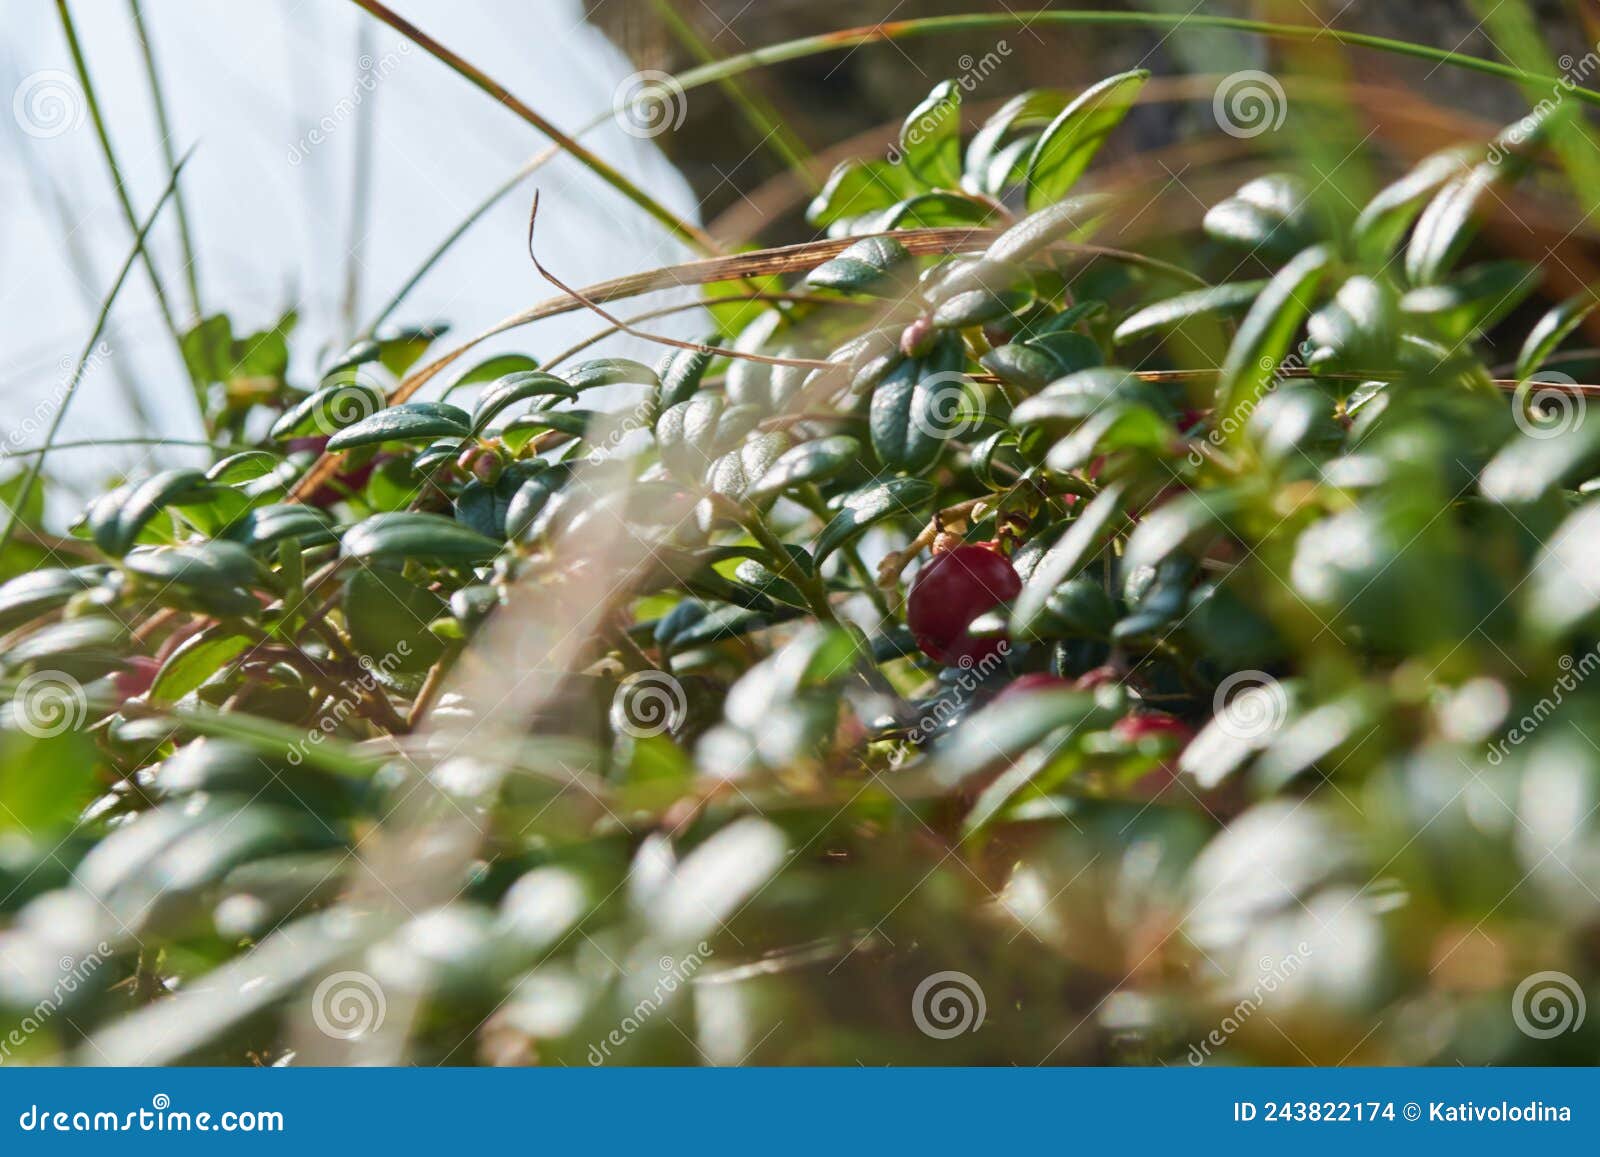 干草欧蓍草从雪下面偷看在一块多雪的沼地 库存图片. 图片 包括有 被雪包围住, 草坪, 窥视, 本质, 横向 - 111576025